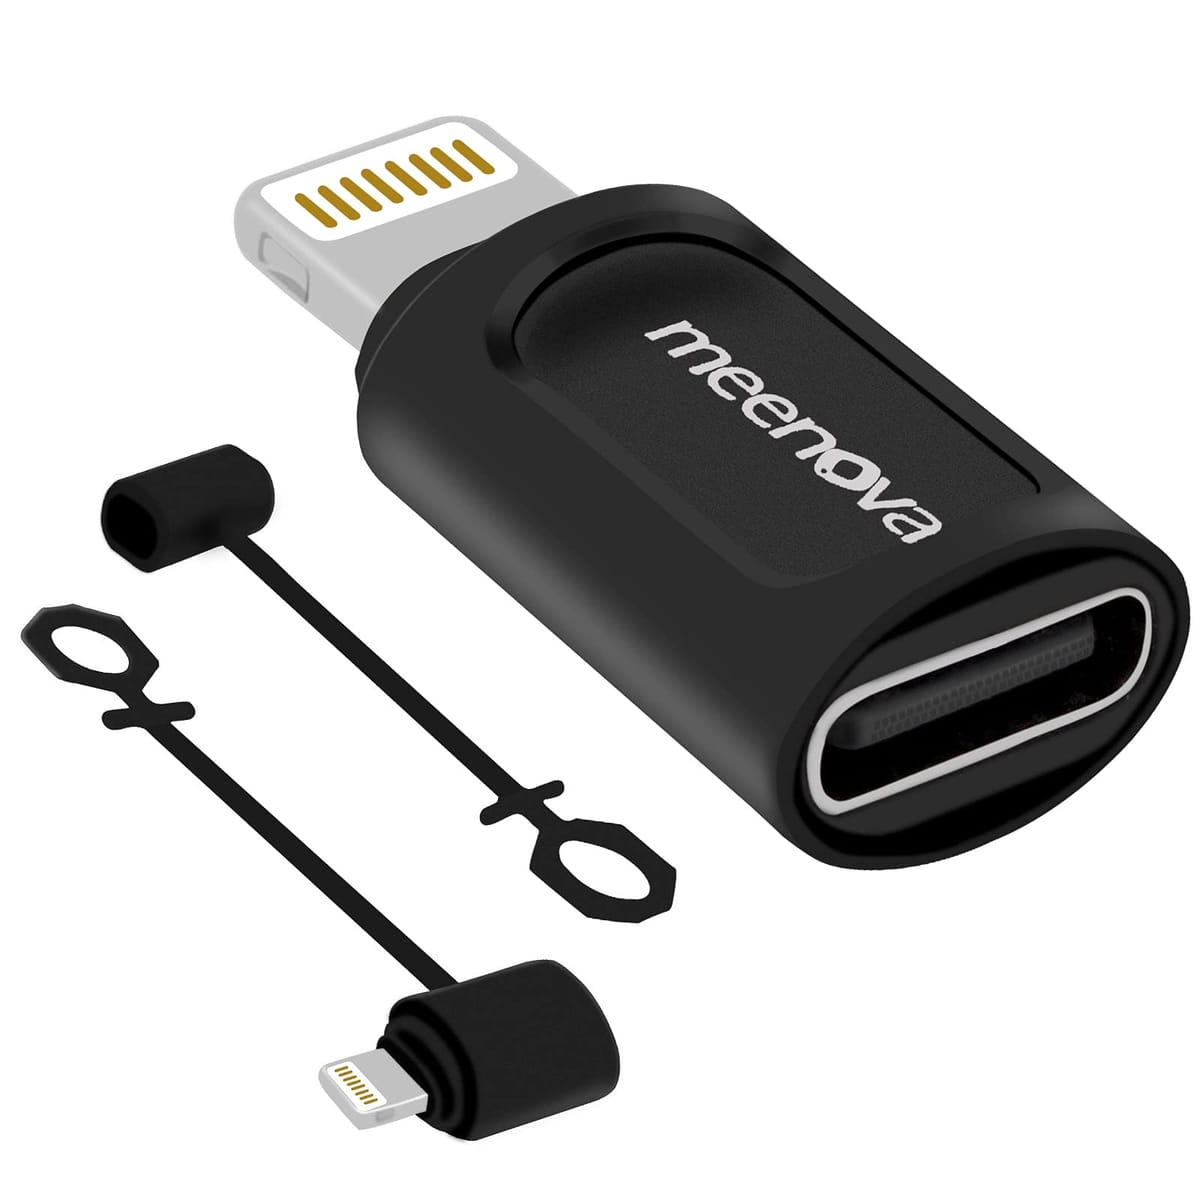 Meenova USB CメスからiOS 15オス充電コンバーター 2.4A12W iPhone 13 Mini Pro Max 12 11 XS データ同期 eMarker PD Type-Cケーブル対応 紛失防止ゴムキーパーコードに取り付け可能